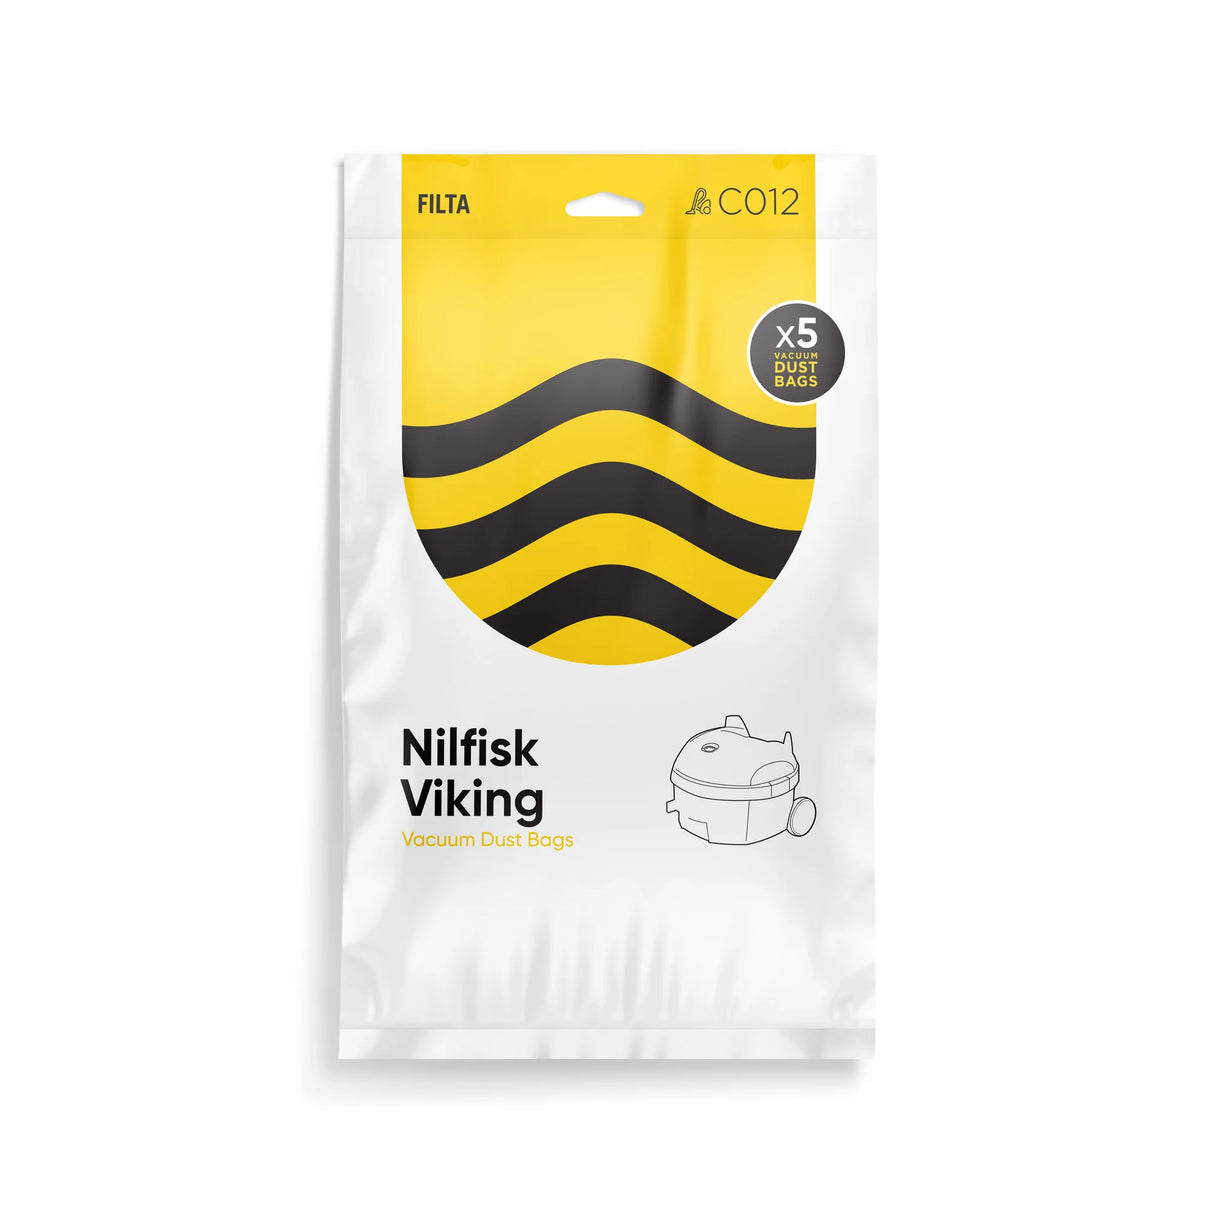 Filta Nilfisk Viking Vacuum Cleaner Bags, 5 Pack